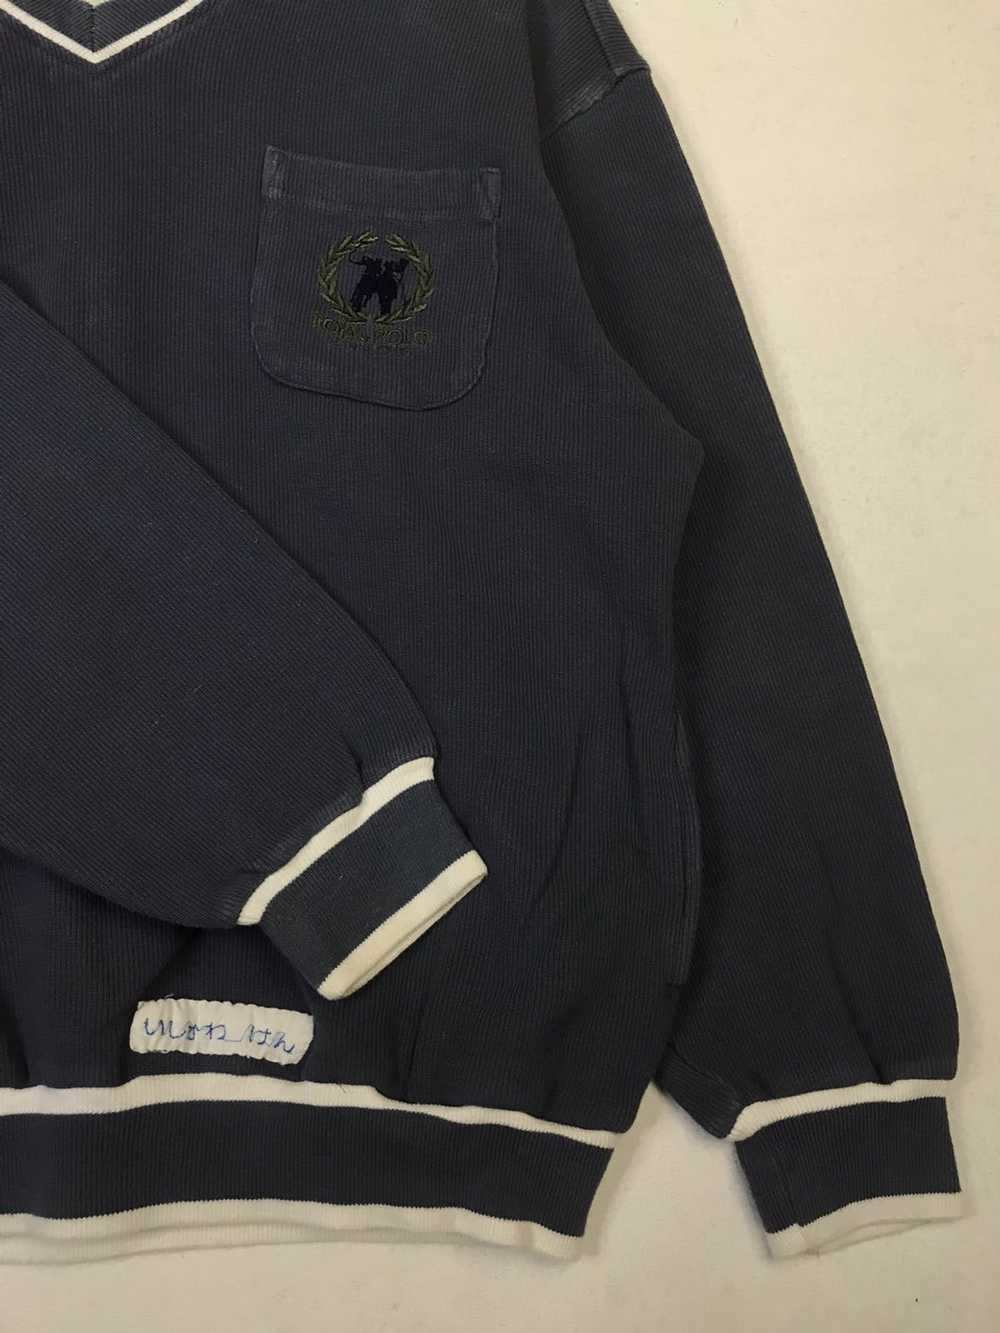 Vintage Royal Polo Sports Club Sweatshirt - image 7